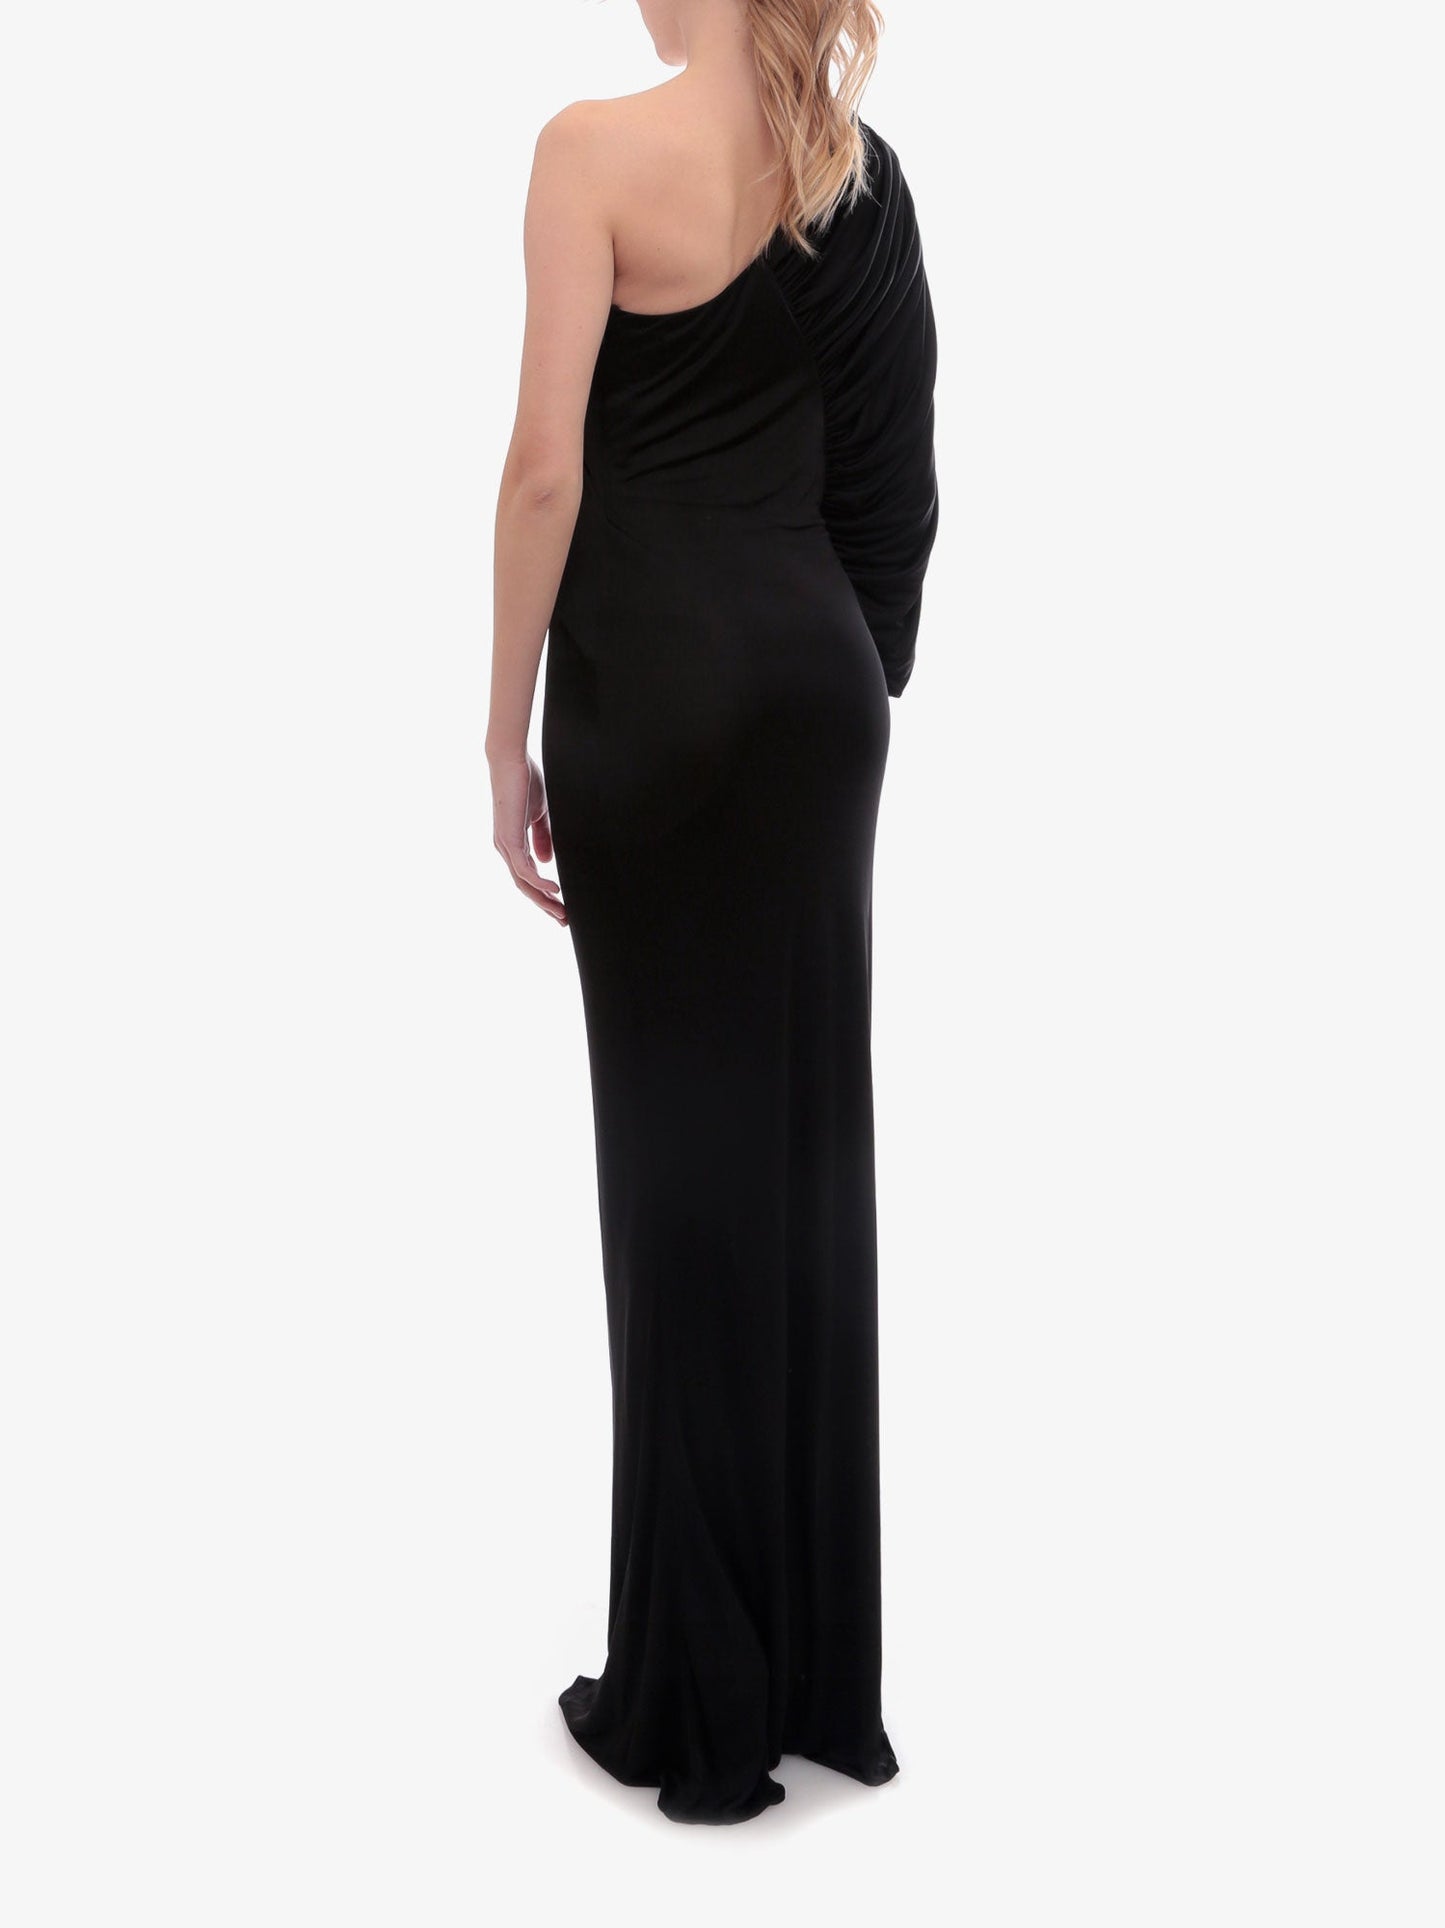 Saint Laurent Woman Dress Woman Black Long Dresses